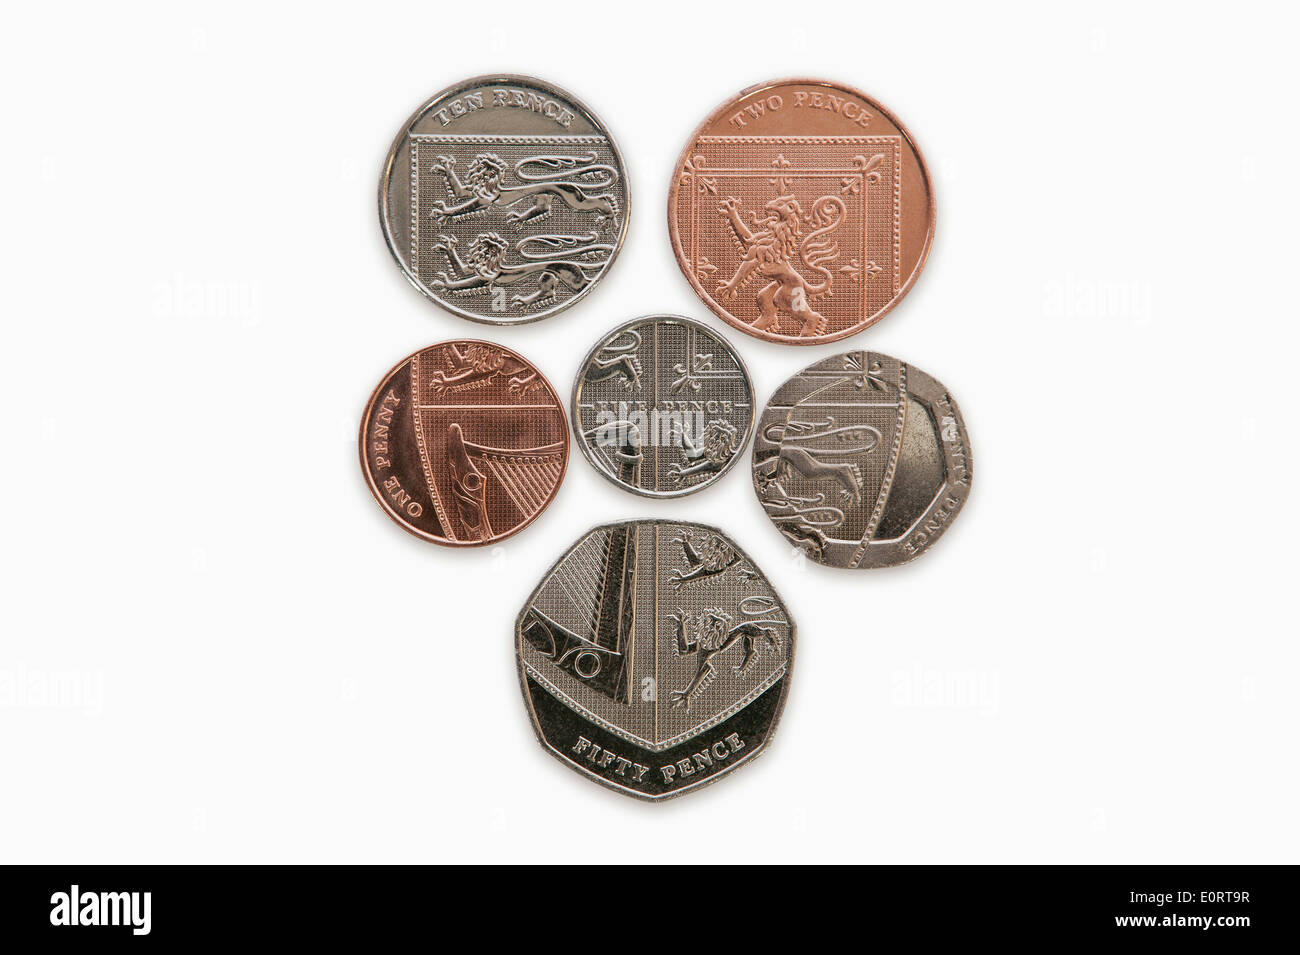 Auf der Rückseite des britischen Pfund Sterling Münzen bilden die Königin Wappen Schild Stockfoto